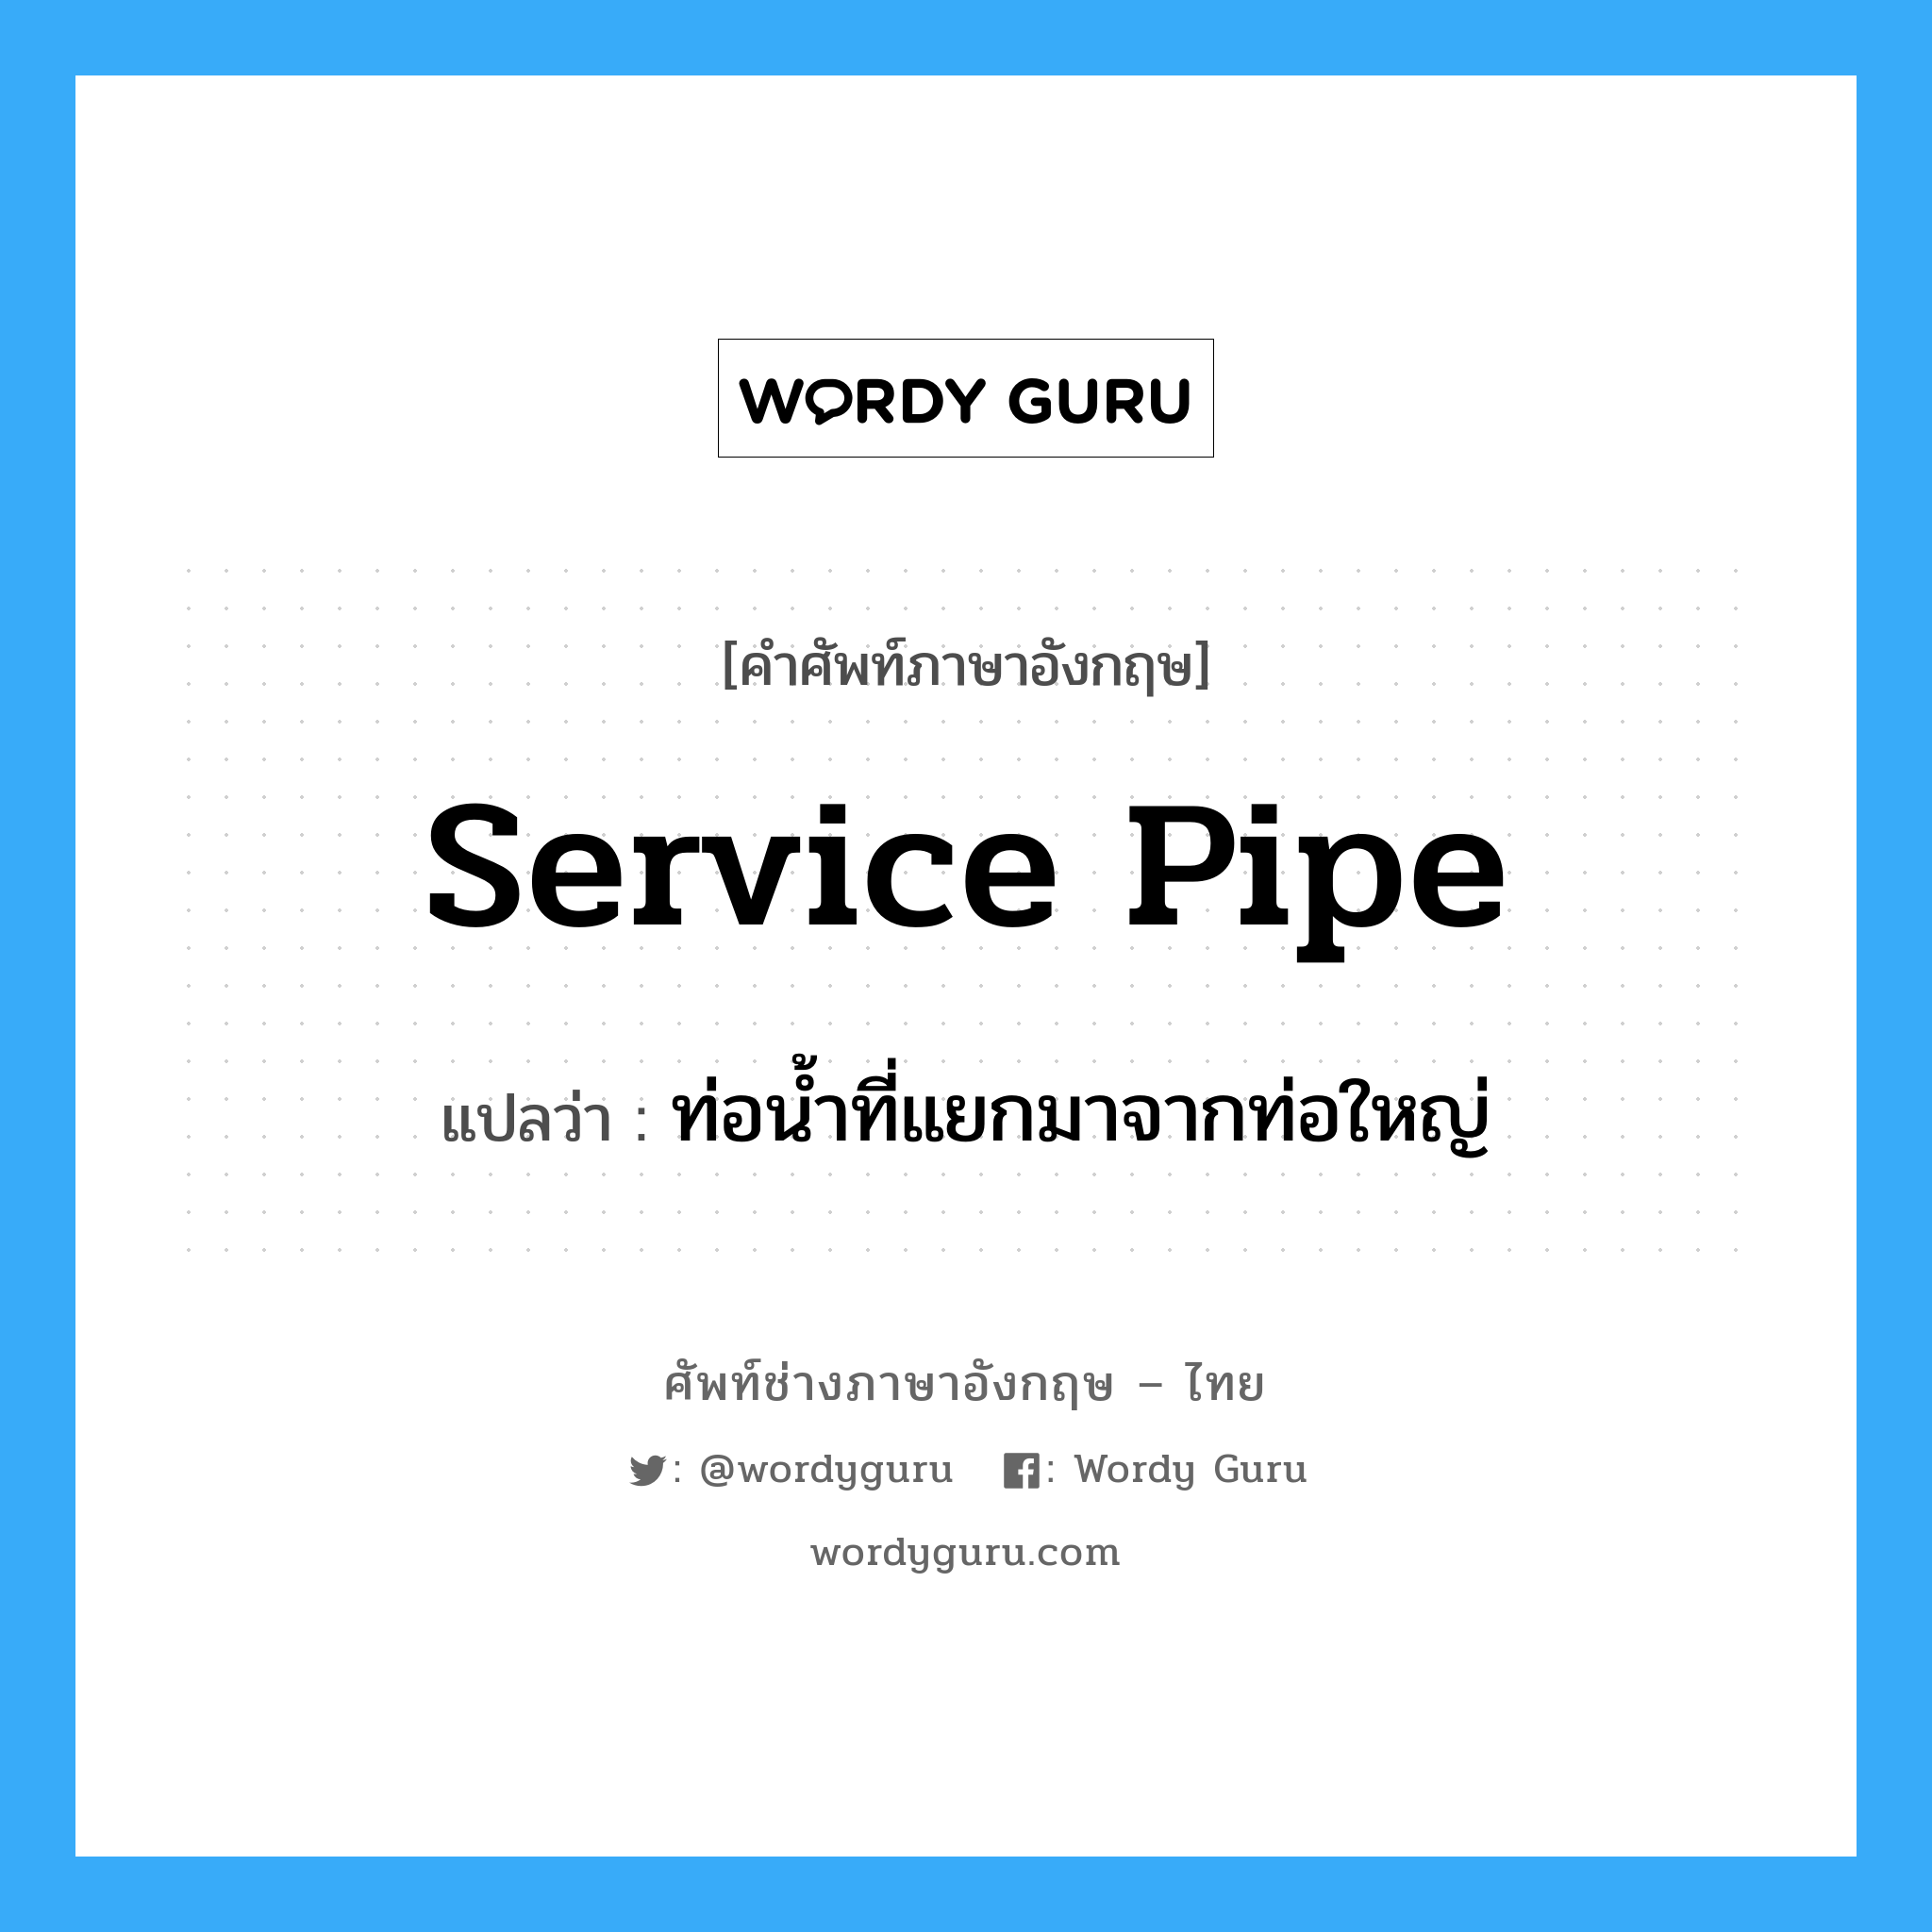 ท่อน้ำที่แยกมาจากท่อใหญ่ ภาษาอังกฤษ?, คำศัพท์ช่างภาษาอังกฤษ - ไทย ท่อน้ำที่แยกมาจากท่อใหญ่ คำศัพท์ภาษาอังกฤษ ท่อน้ำที่แยกมาจากท่อใหญ่ แปลว่า service pipe